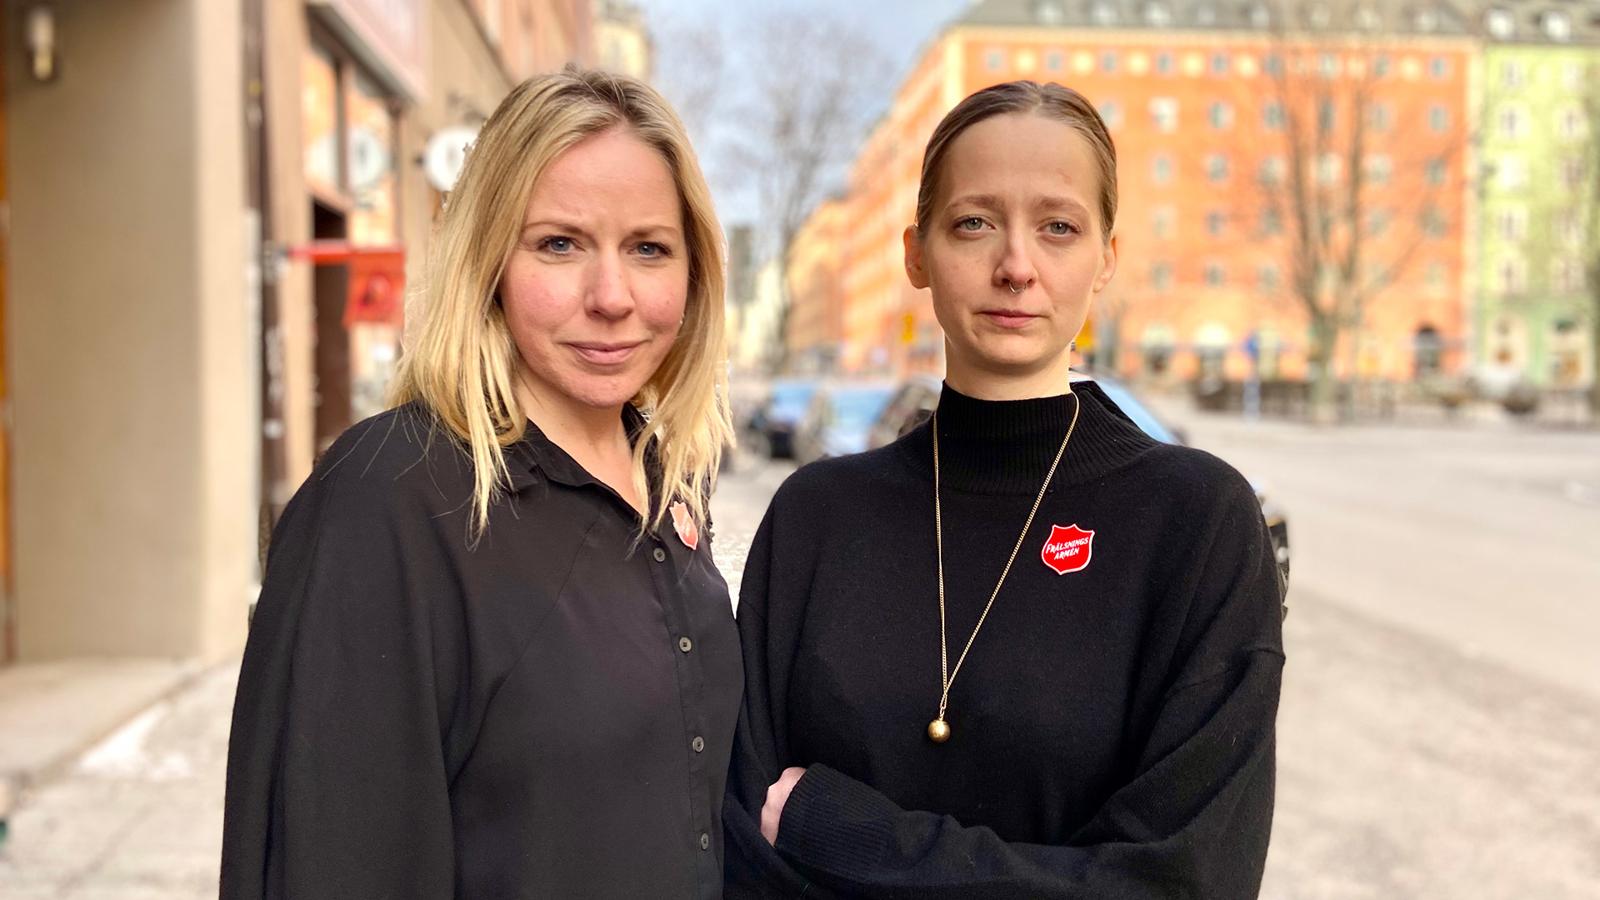 Madeleine Sundell och Lovisa Landälv står bredvid varandra utomhus i en stad.